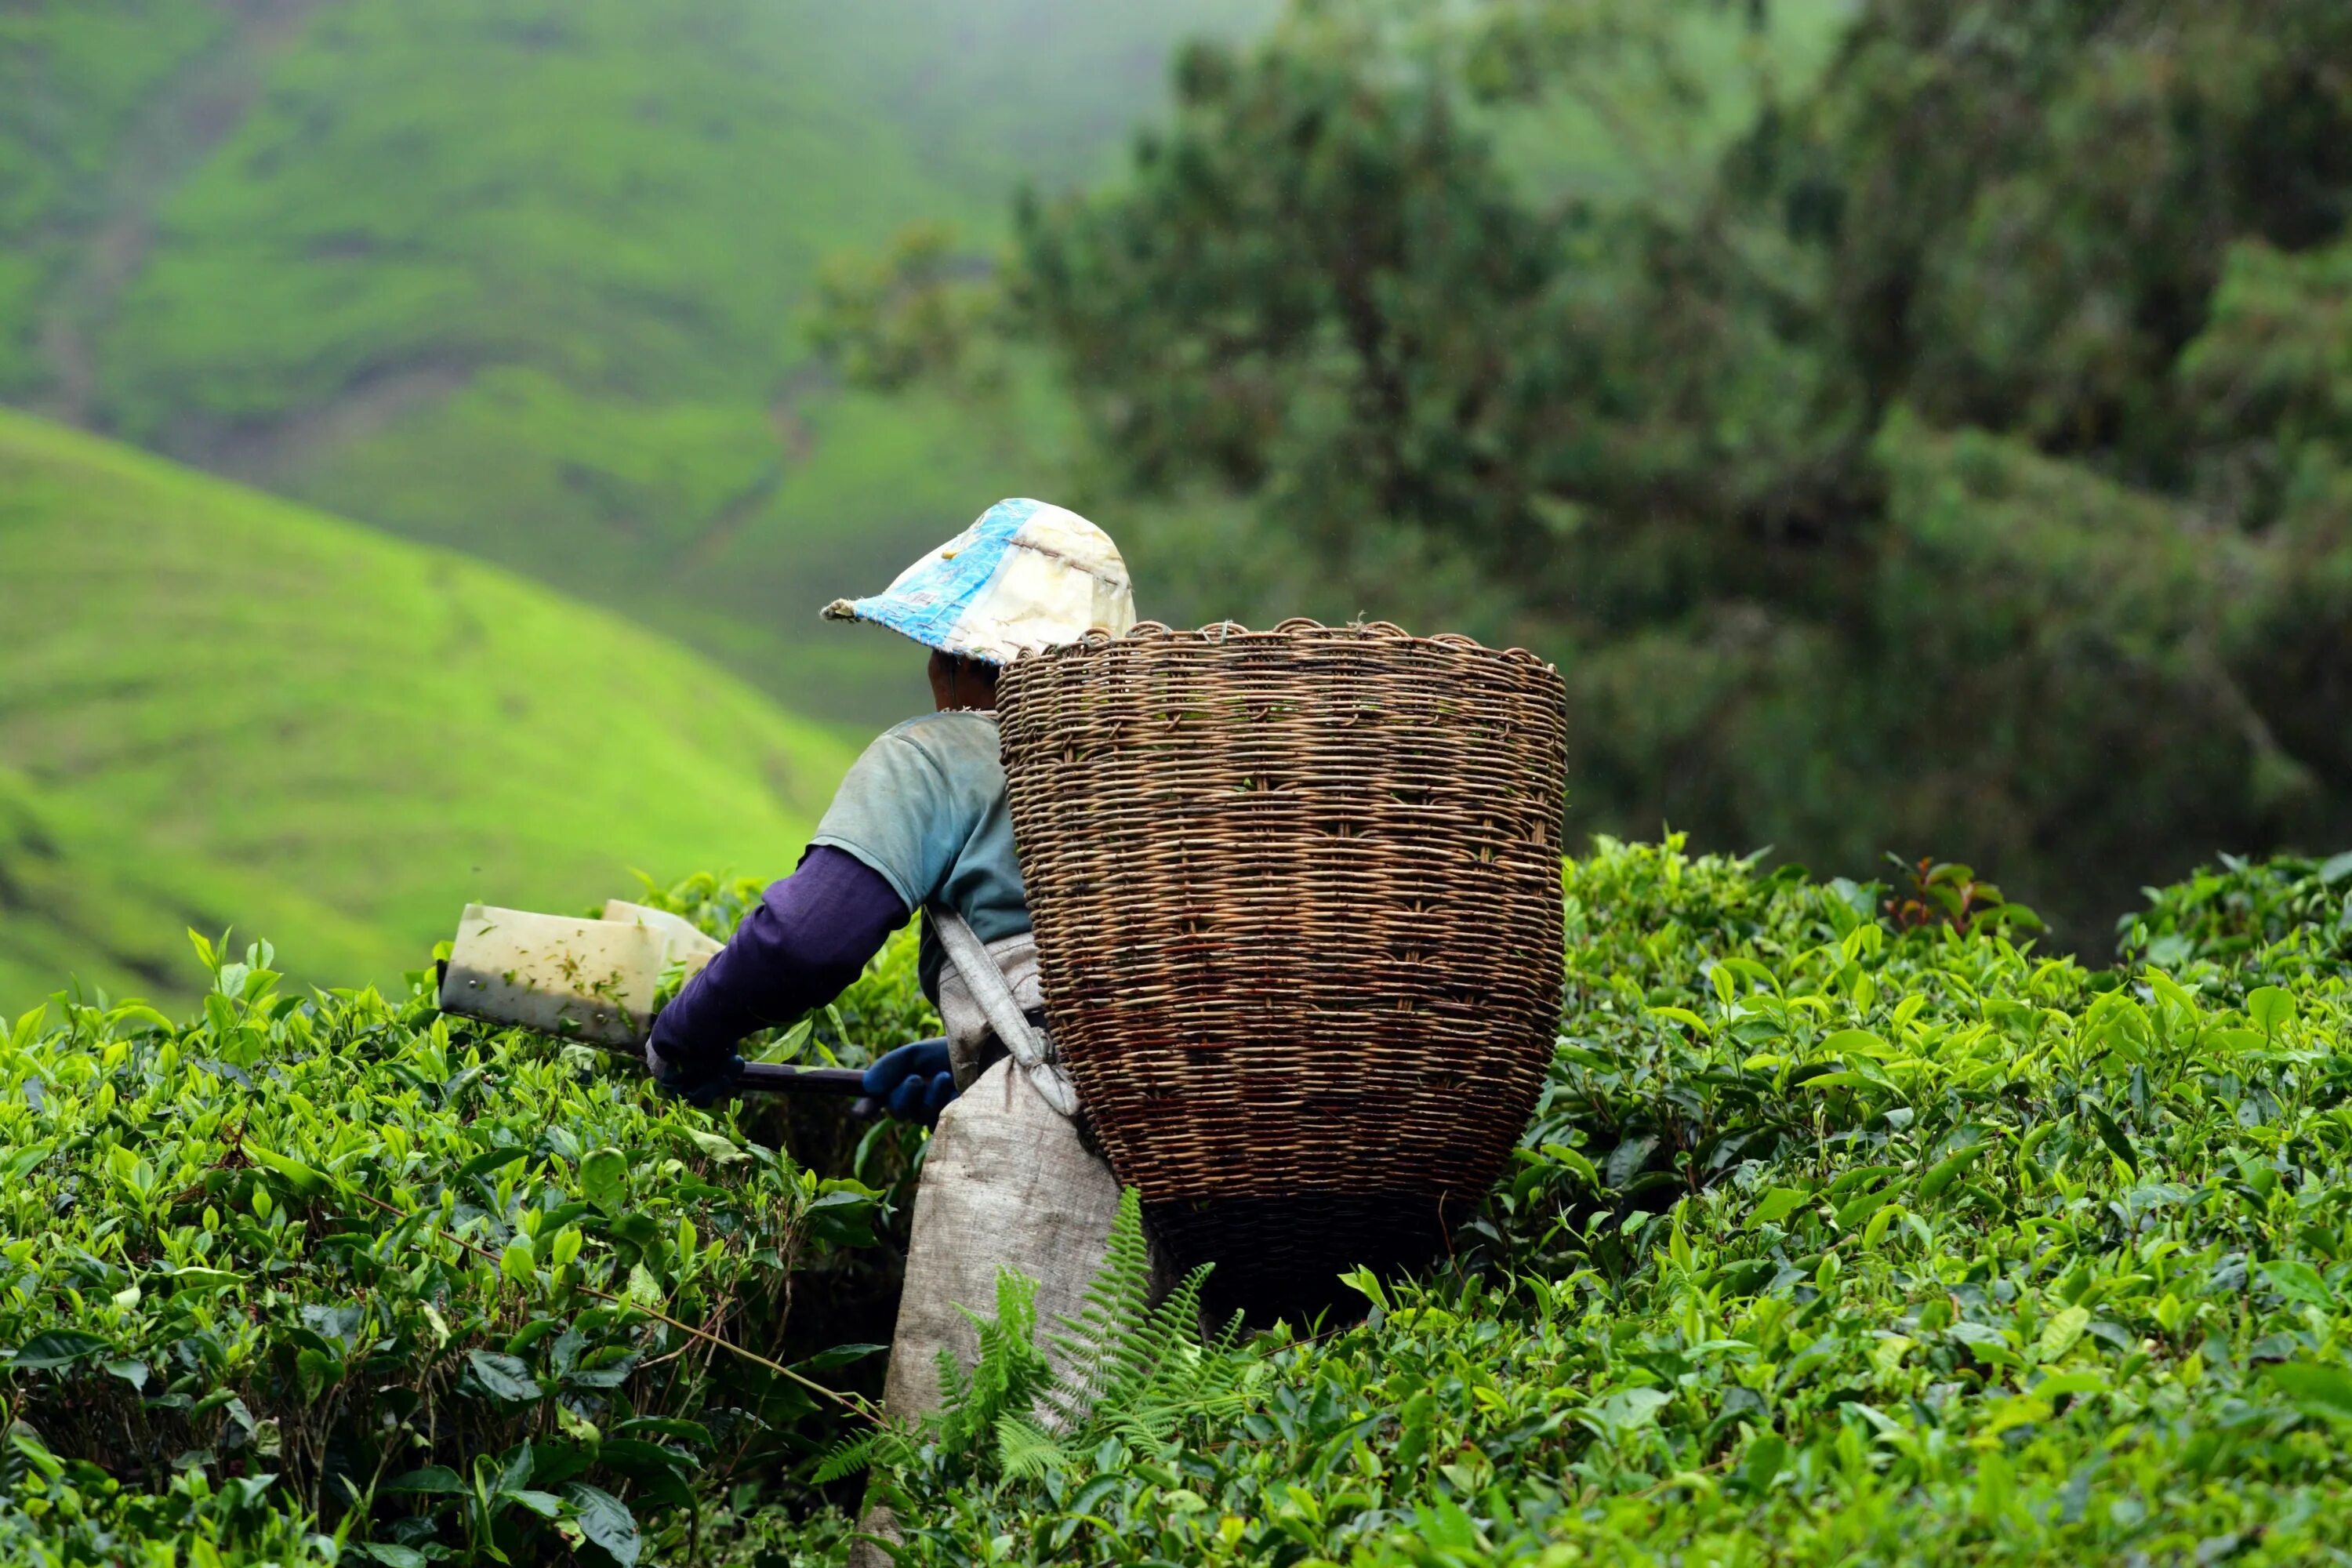 Камерон-Хайлендс чайные плантации. Чайные плантации Камерон Хайлендс в Малайзию. Чайные плантации в Индии. Чайные плантации Индии чайные листья. Малайзия специализация